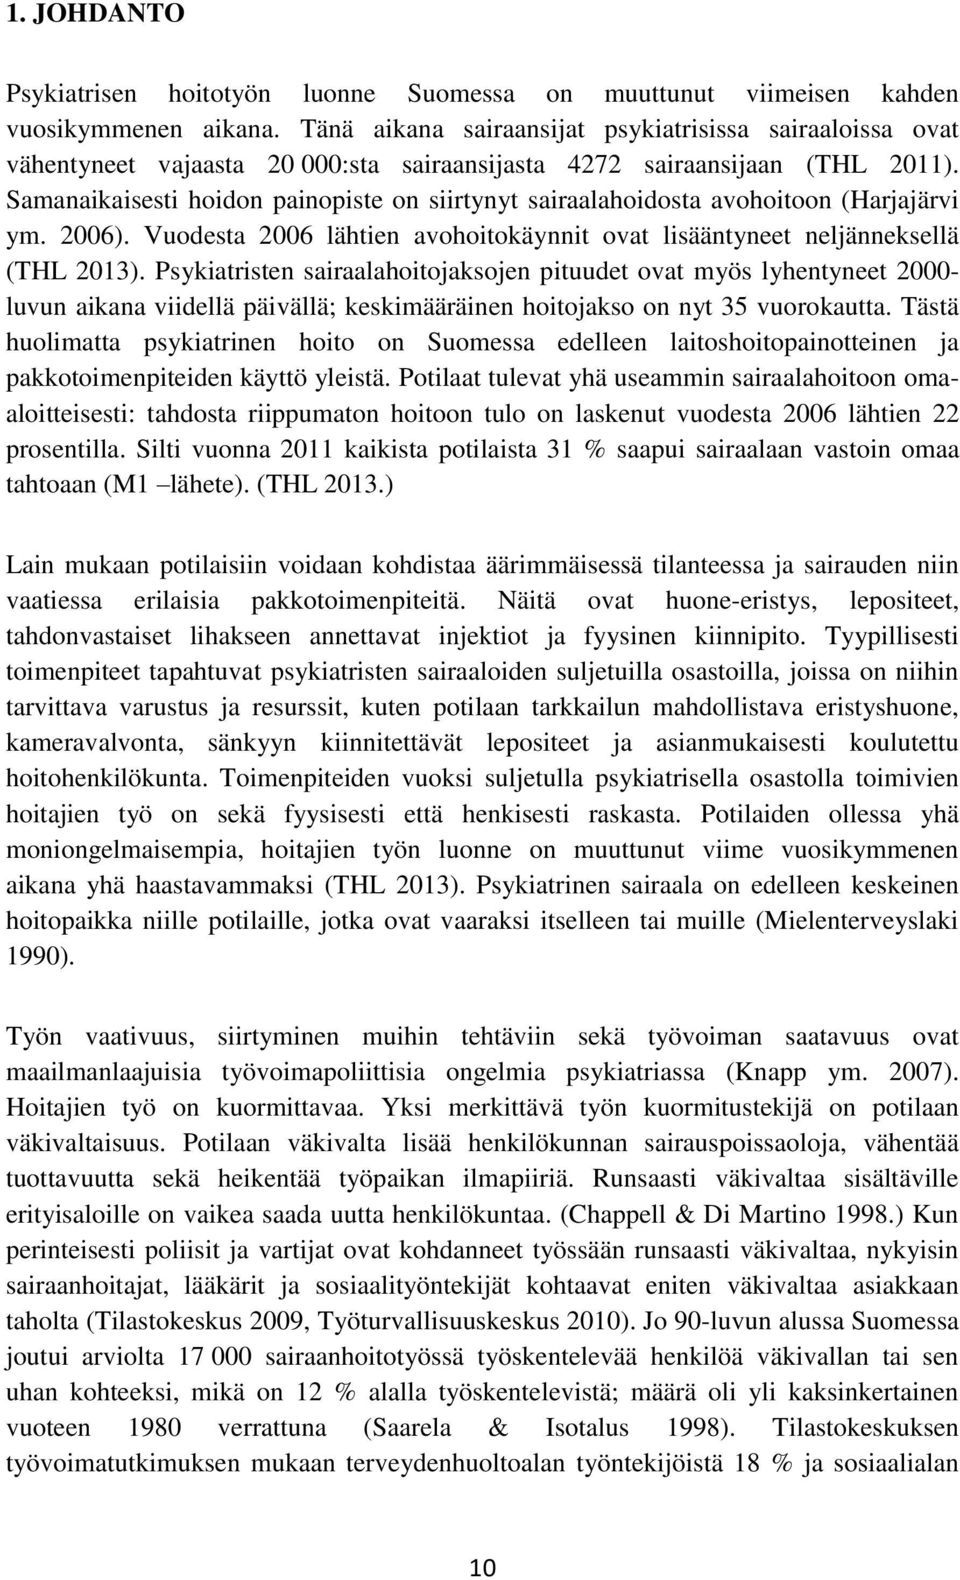 Samanaikaisesti hoidon painopiste on siirtynyt sairaalahoidosta avohoitoon (Harjajärvi ym. 2006). Vuodesta 2006 lähtien avohoitokäynnit ovat lisääntyneet neljänneksellä (THL 2013).